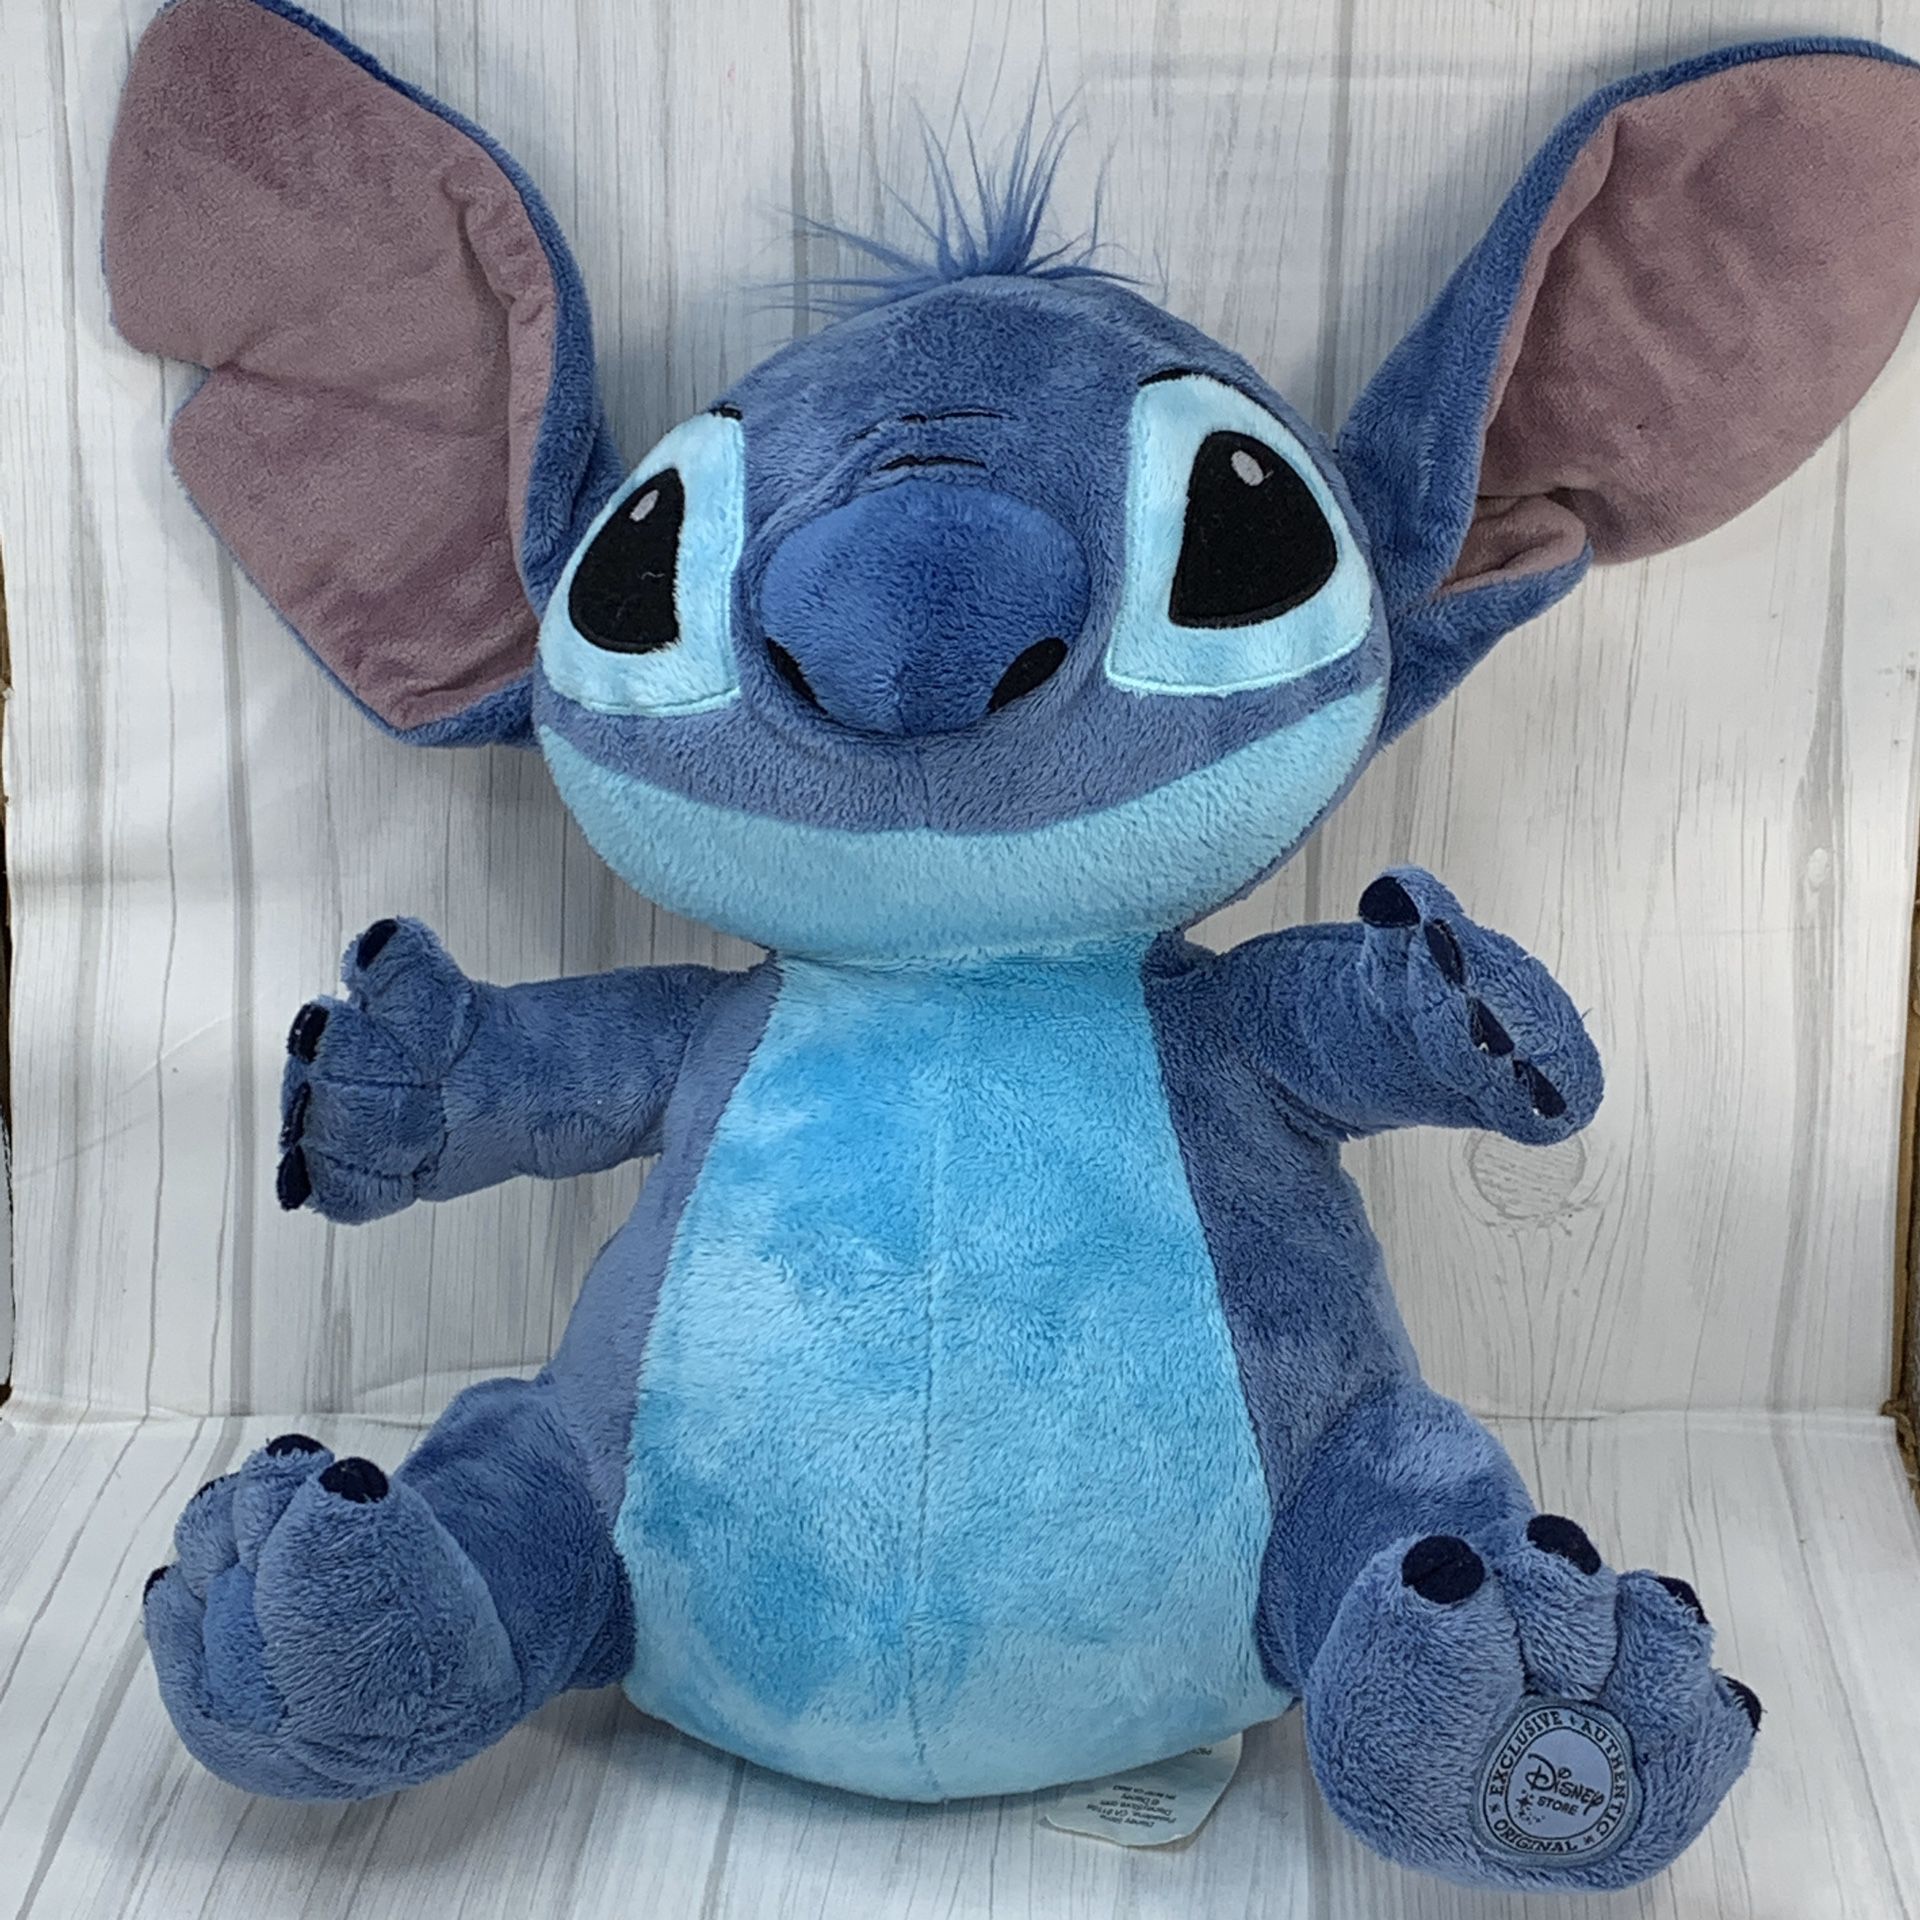 Disney Store Plush Stitch Stuffed Animal 12” Lilo & Stitch Collectible Toy